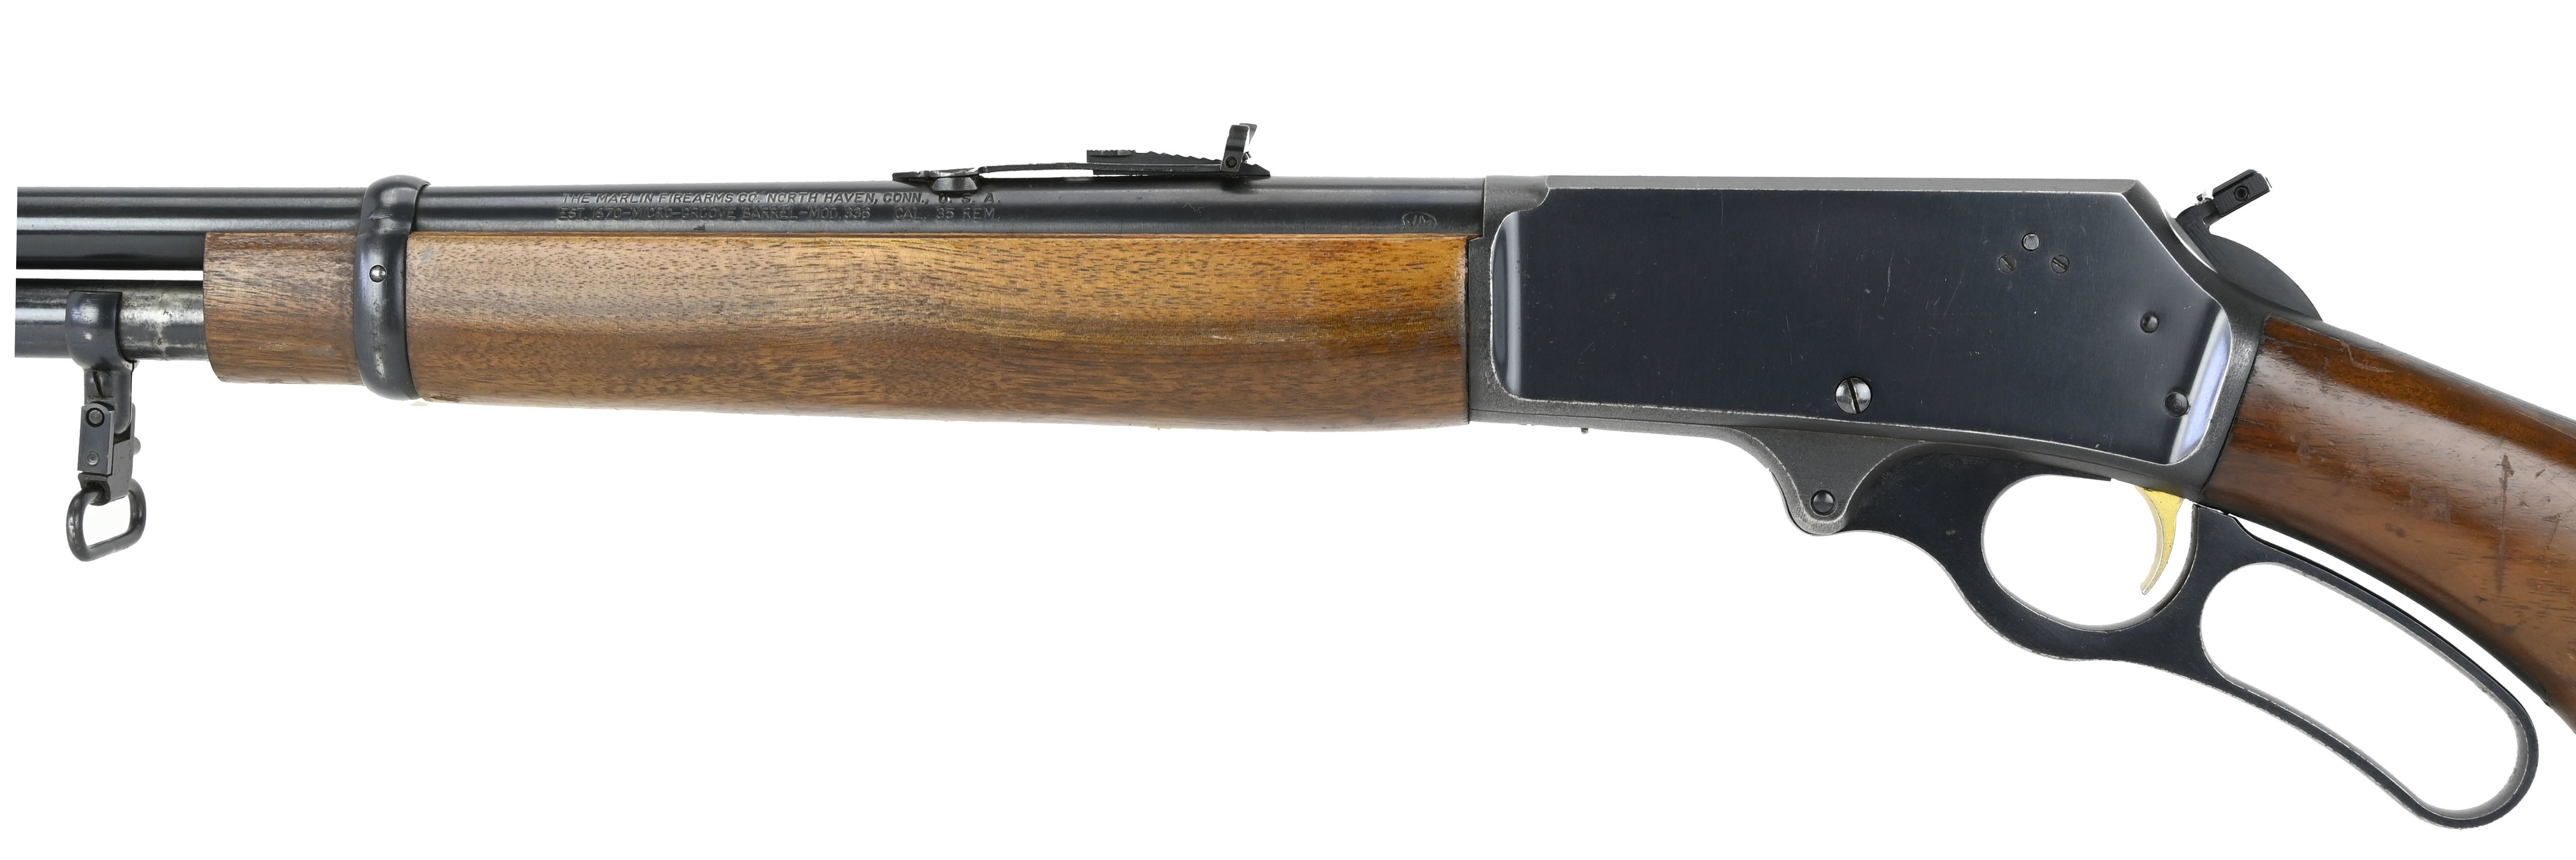 marlin-336-35-rem-caliber-carbine-for-sale